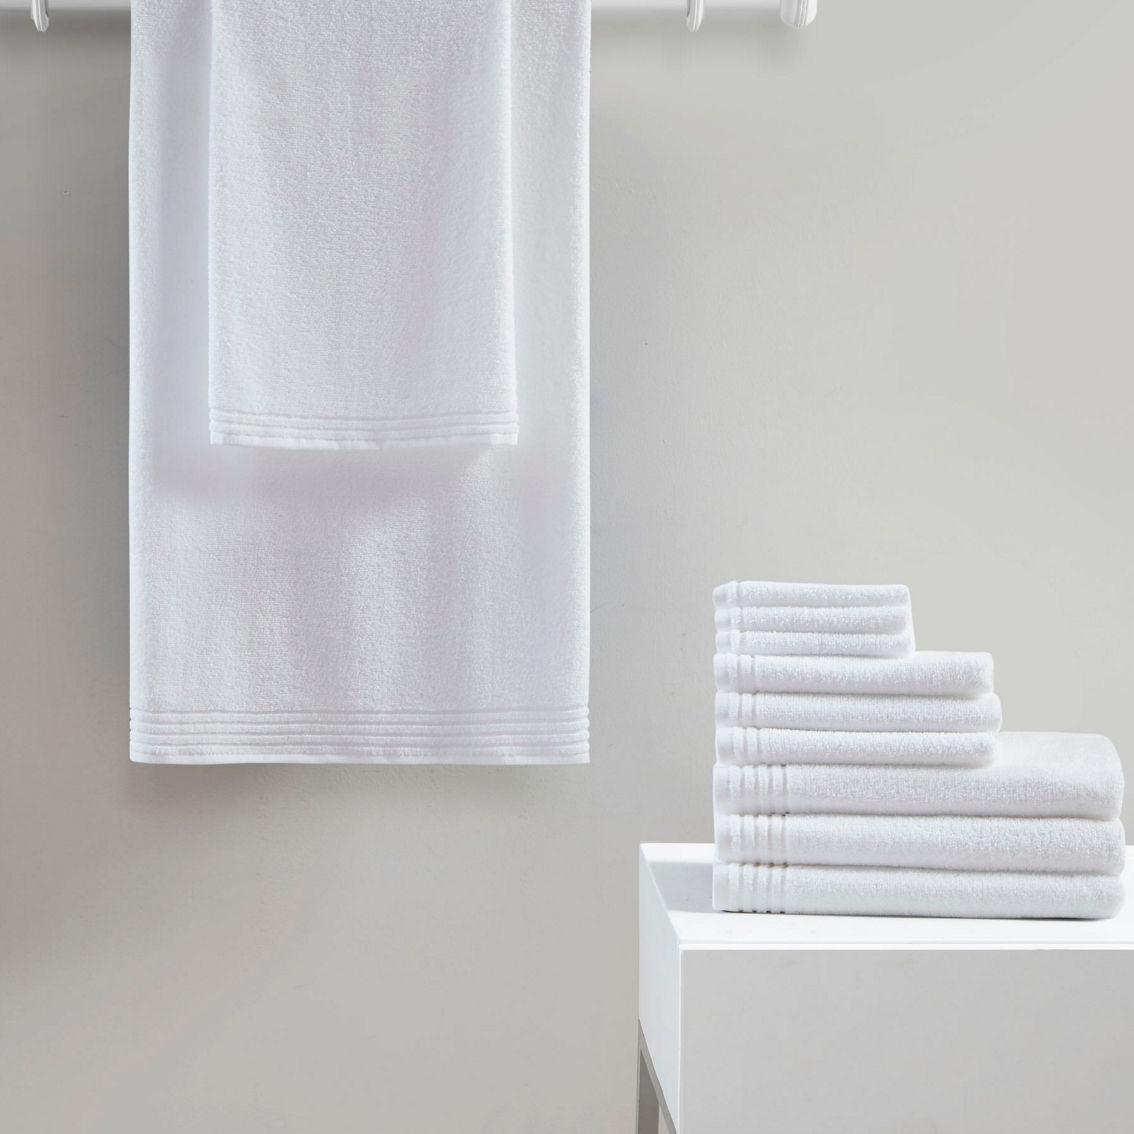 510 Design Big Bundle 100% Cotton Quick Dry 12 Piece Bath Towel Set - Image 5 of 5